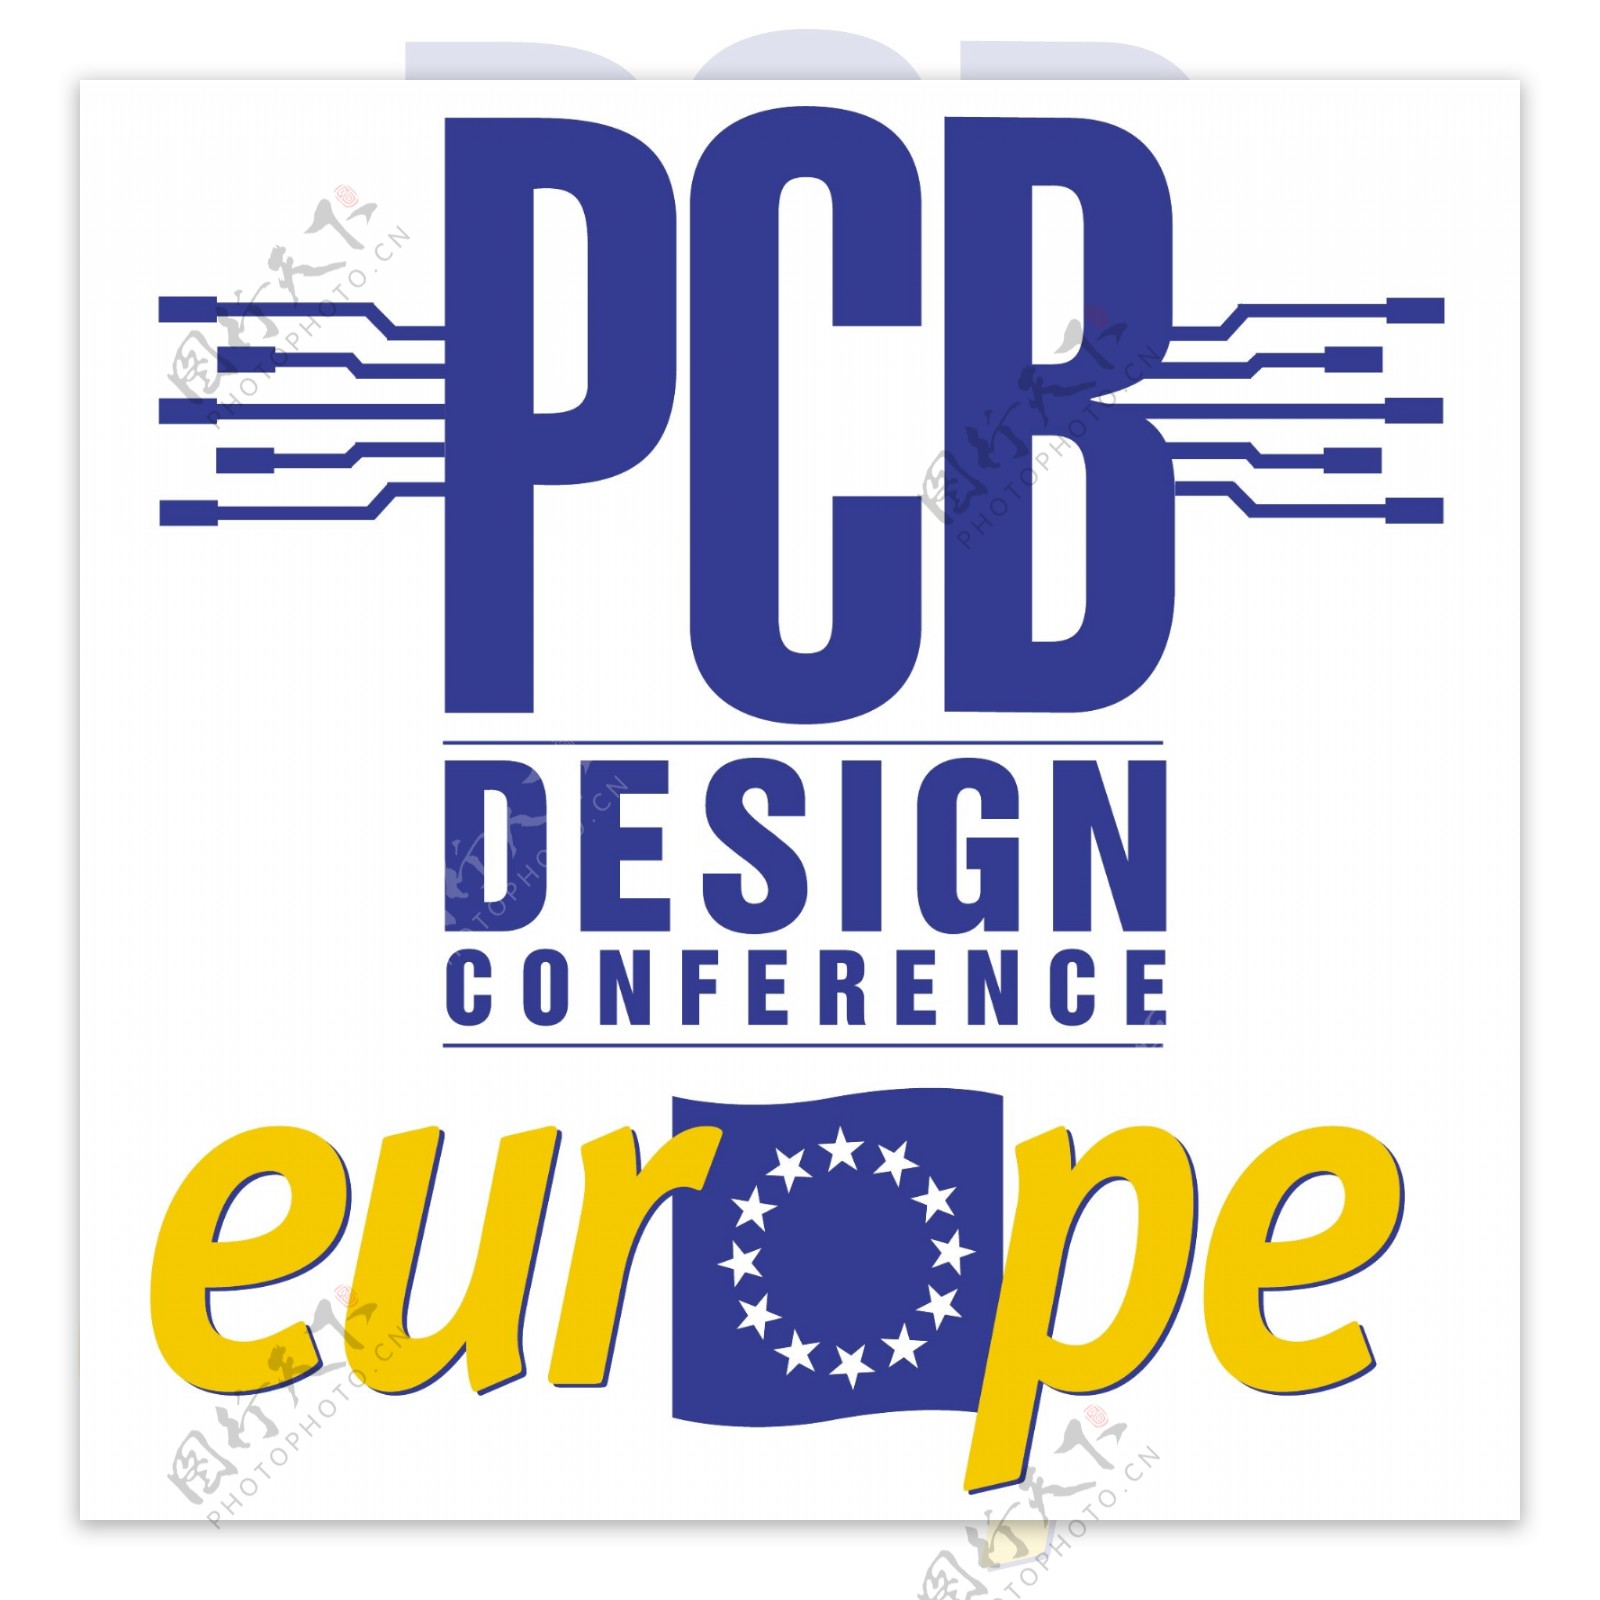 PCB设计会议